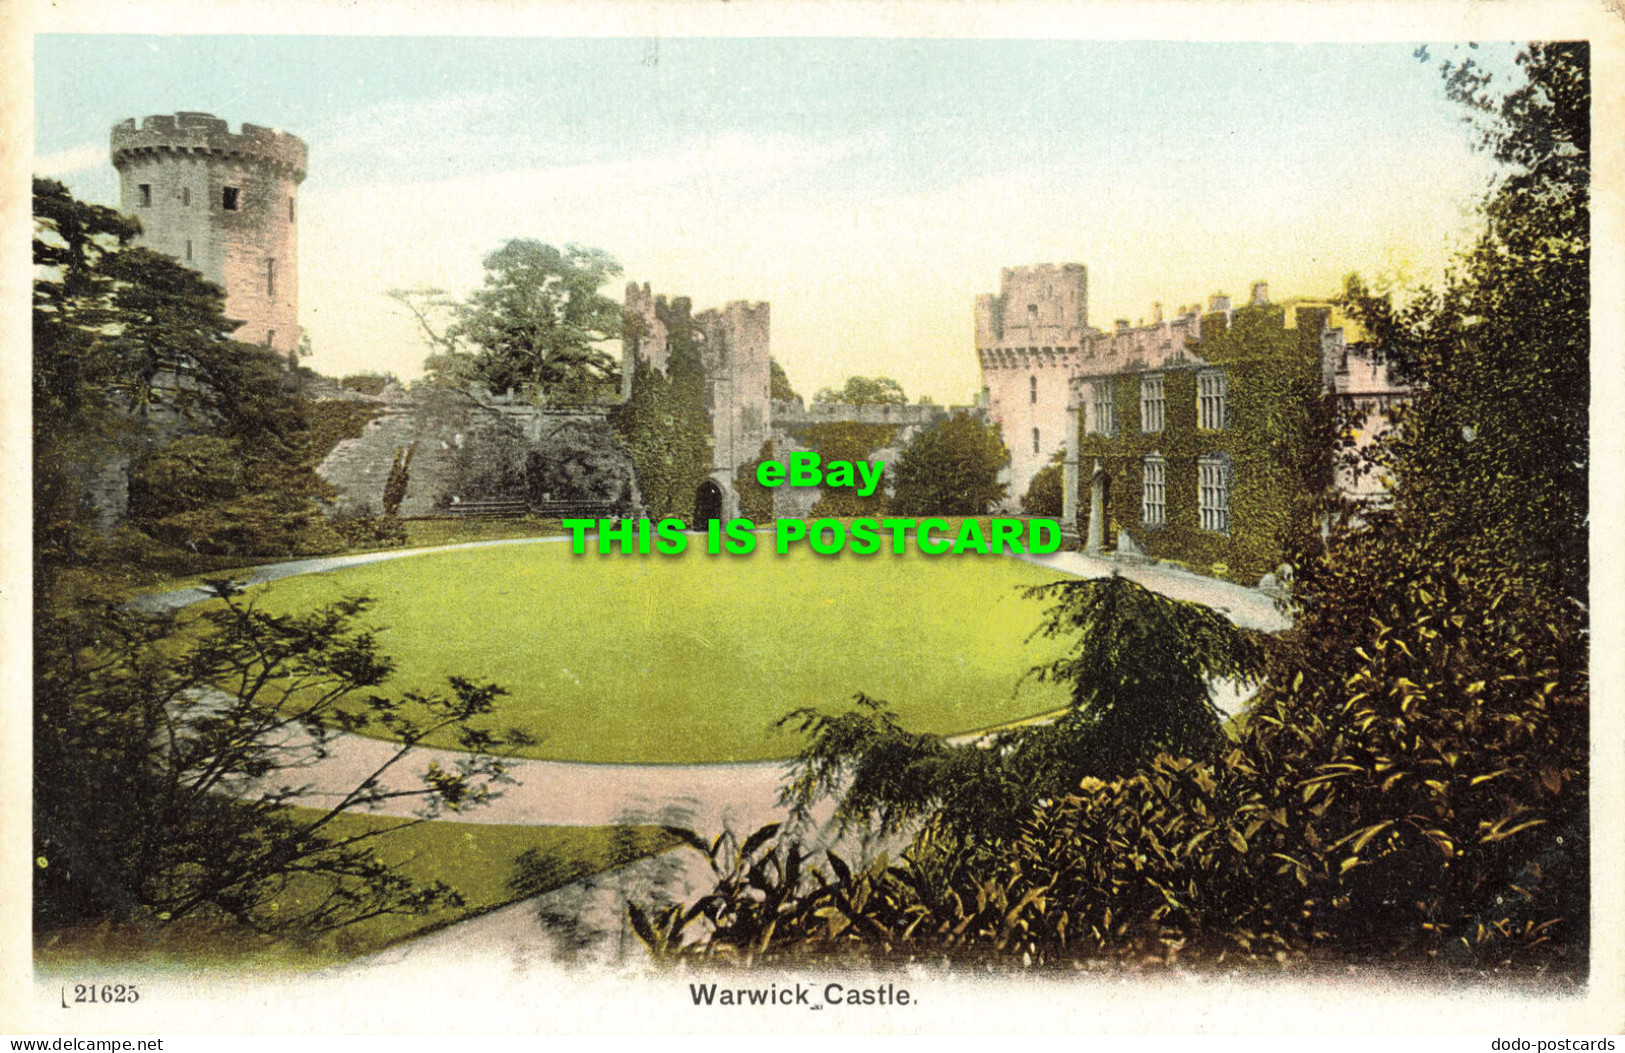 R568255 21625. Warwick Castle - World